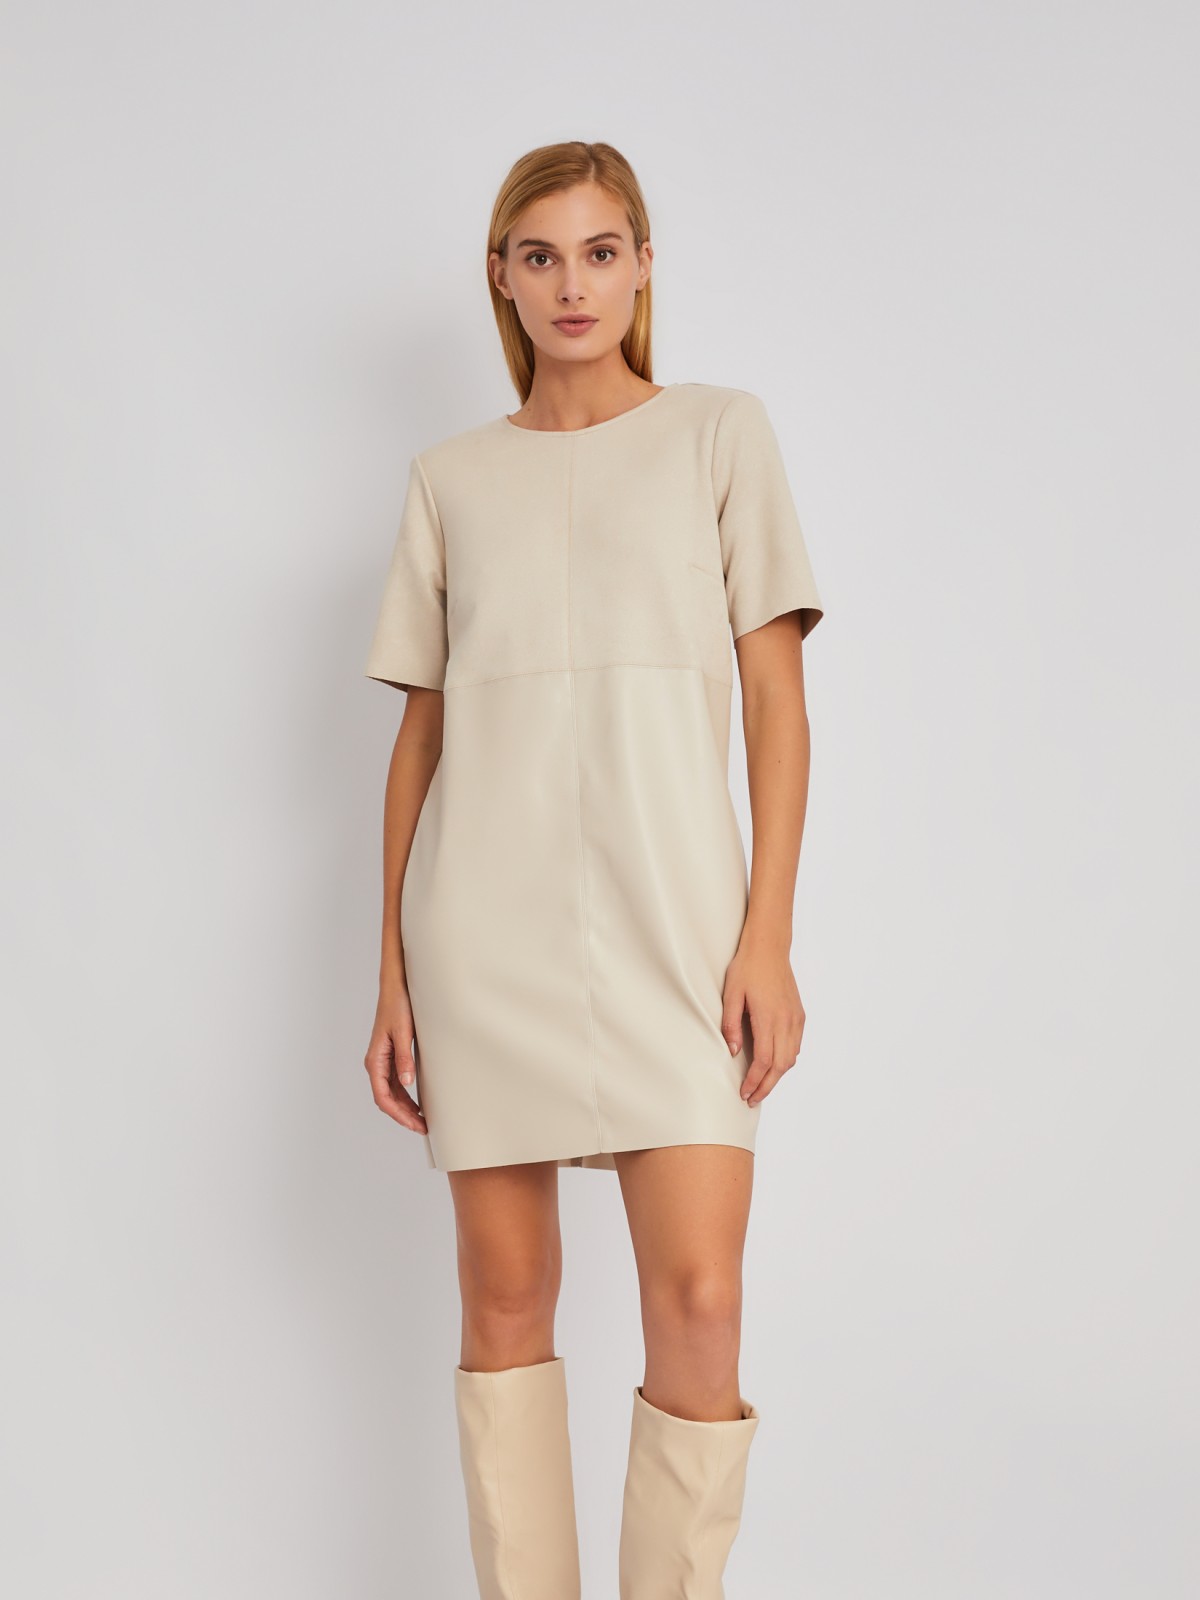 Комбинированное платье-футболка из экокожи и экозамши zolla 024118259163, цвет молоко, размер S